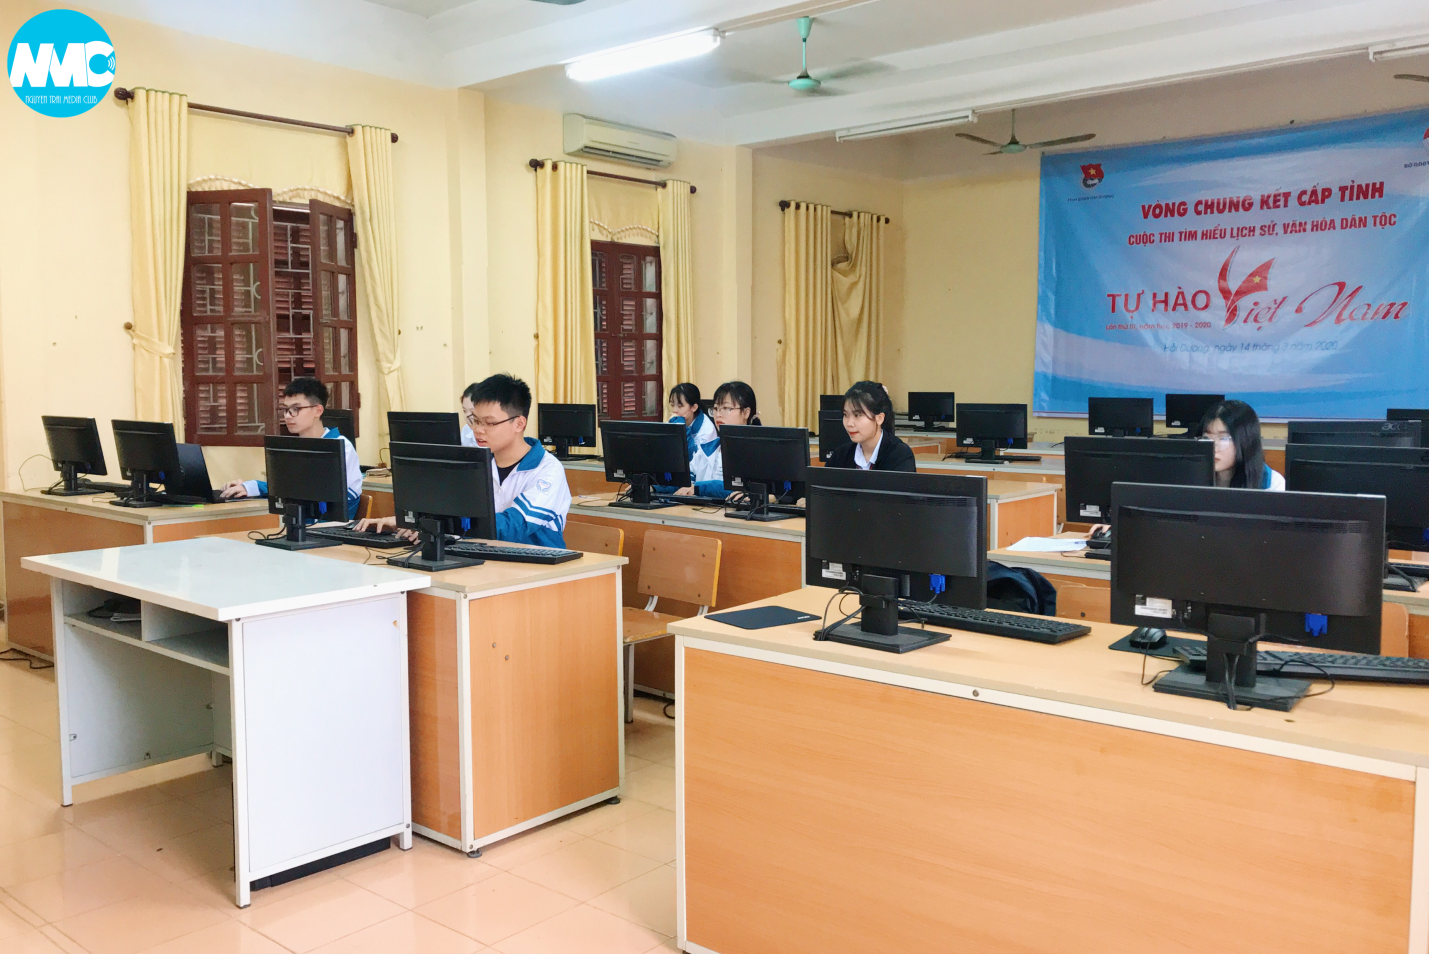 Các thí sinh trường CNT tập trung làm bài thi chung kết cấp tỉnh ngày 14/03/2020